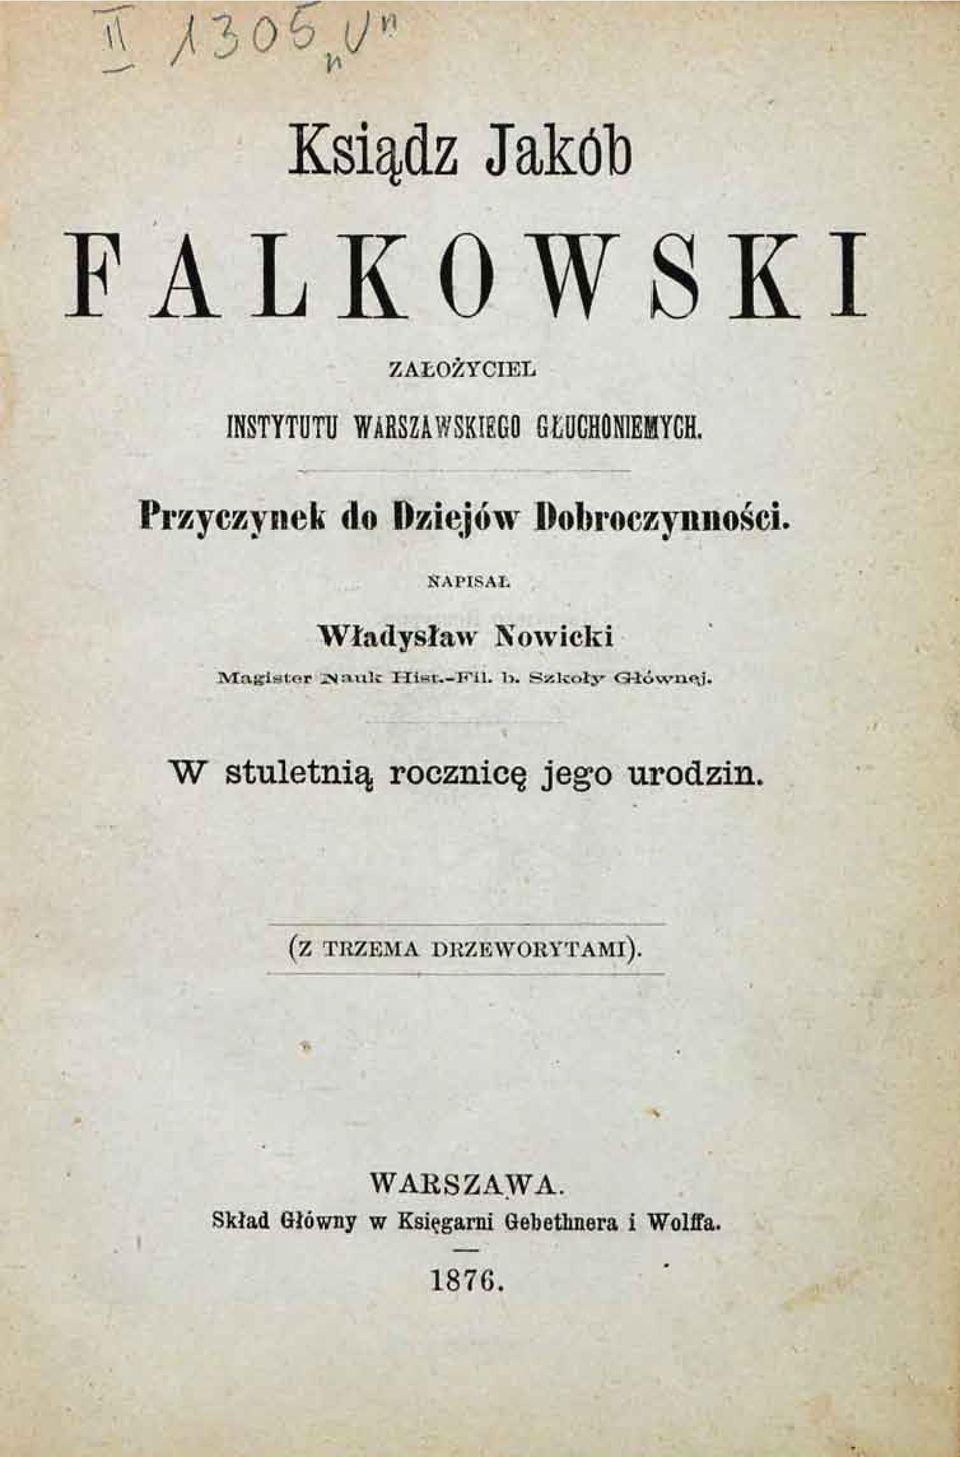 NAPISAŁ Władysław Nowicki 3VIa{{istor jnrtulc T-IiKt.-F*il. 1>.